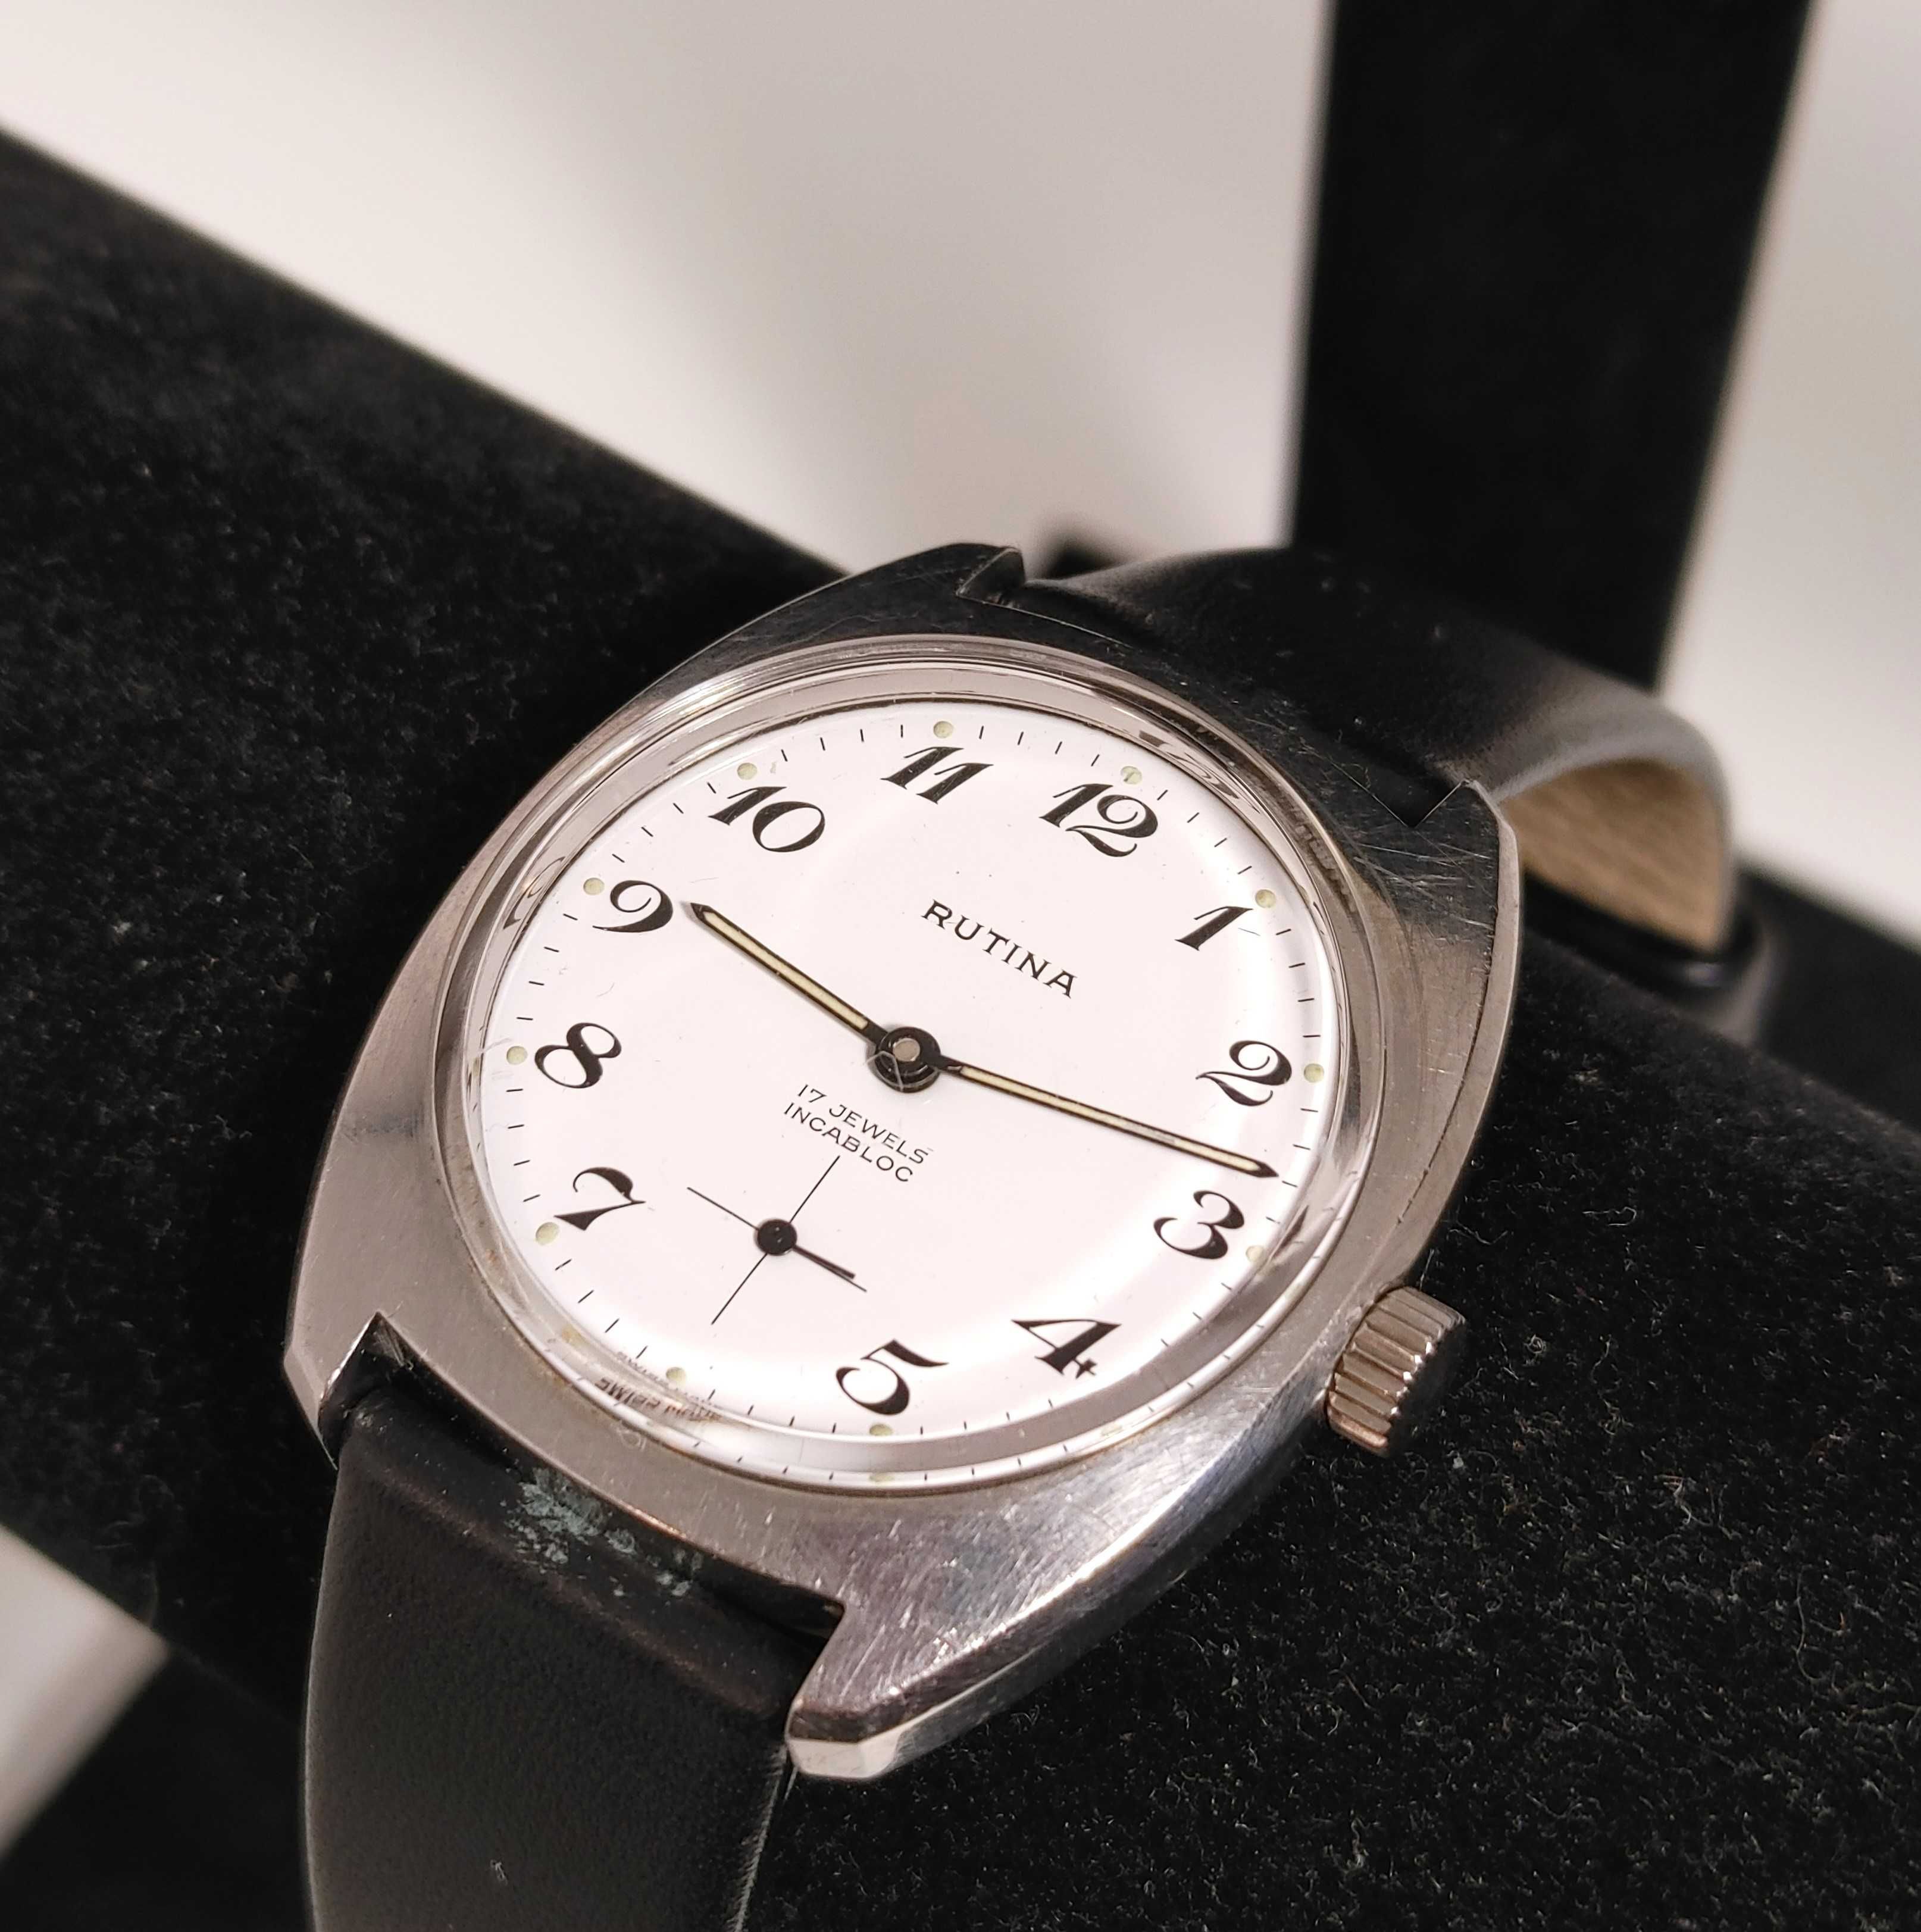 Klasyczny zegarek z lat 60/70 tych XX wieku RUTINA made in Swiss